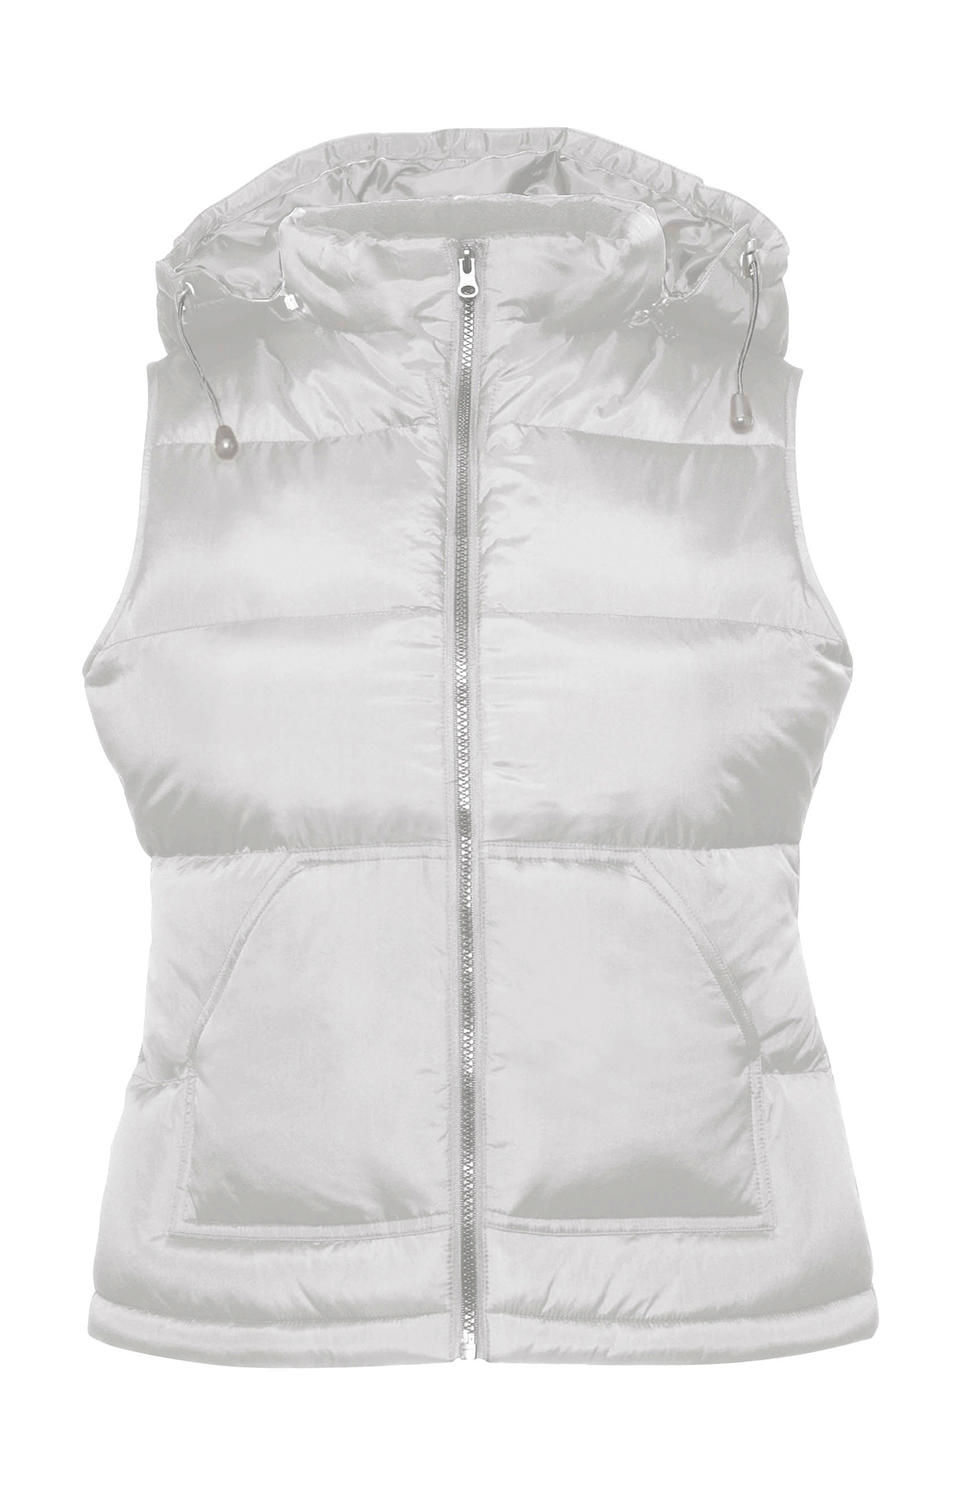  Zen+/women Bodywarmer in Farbe White